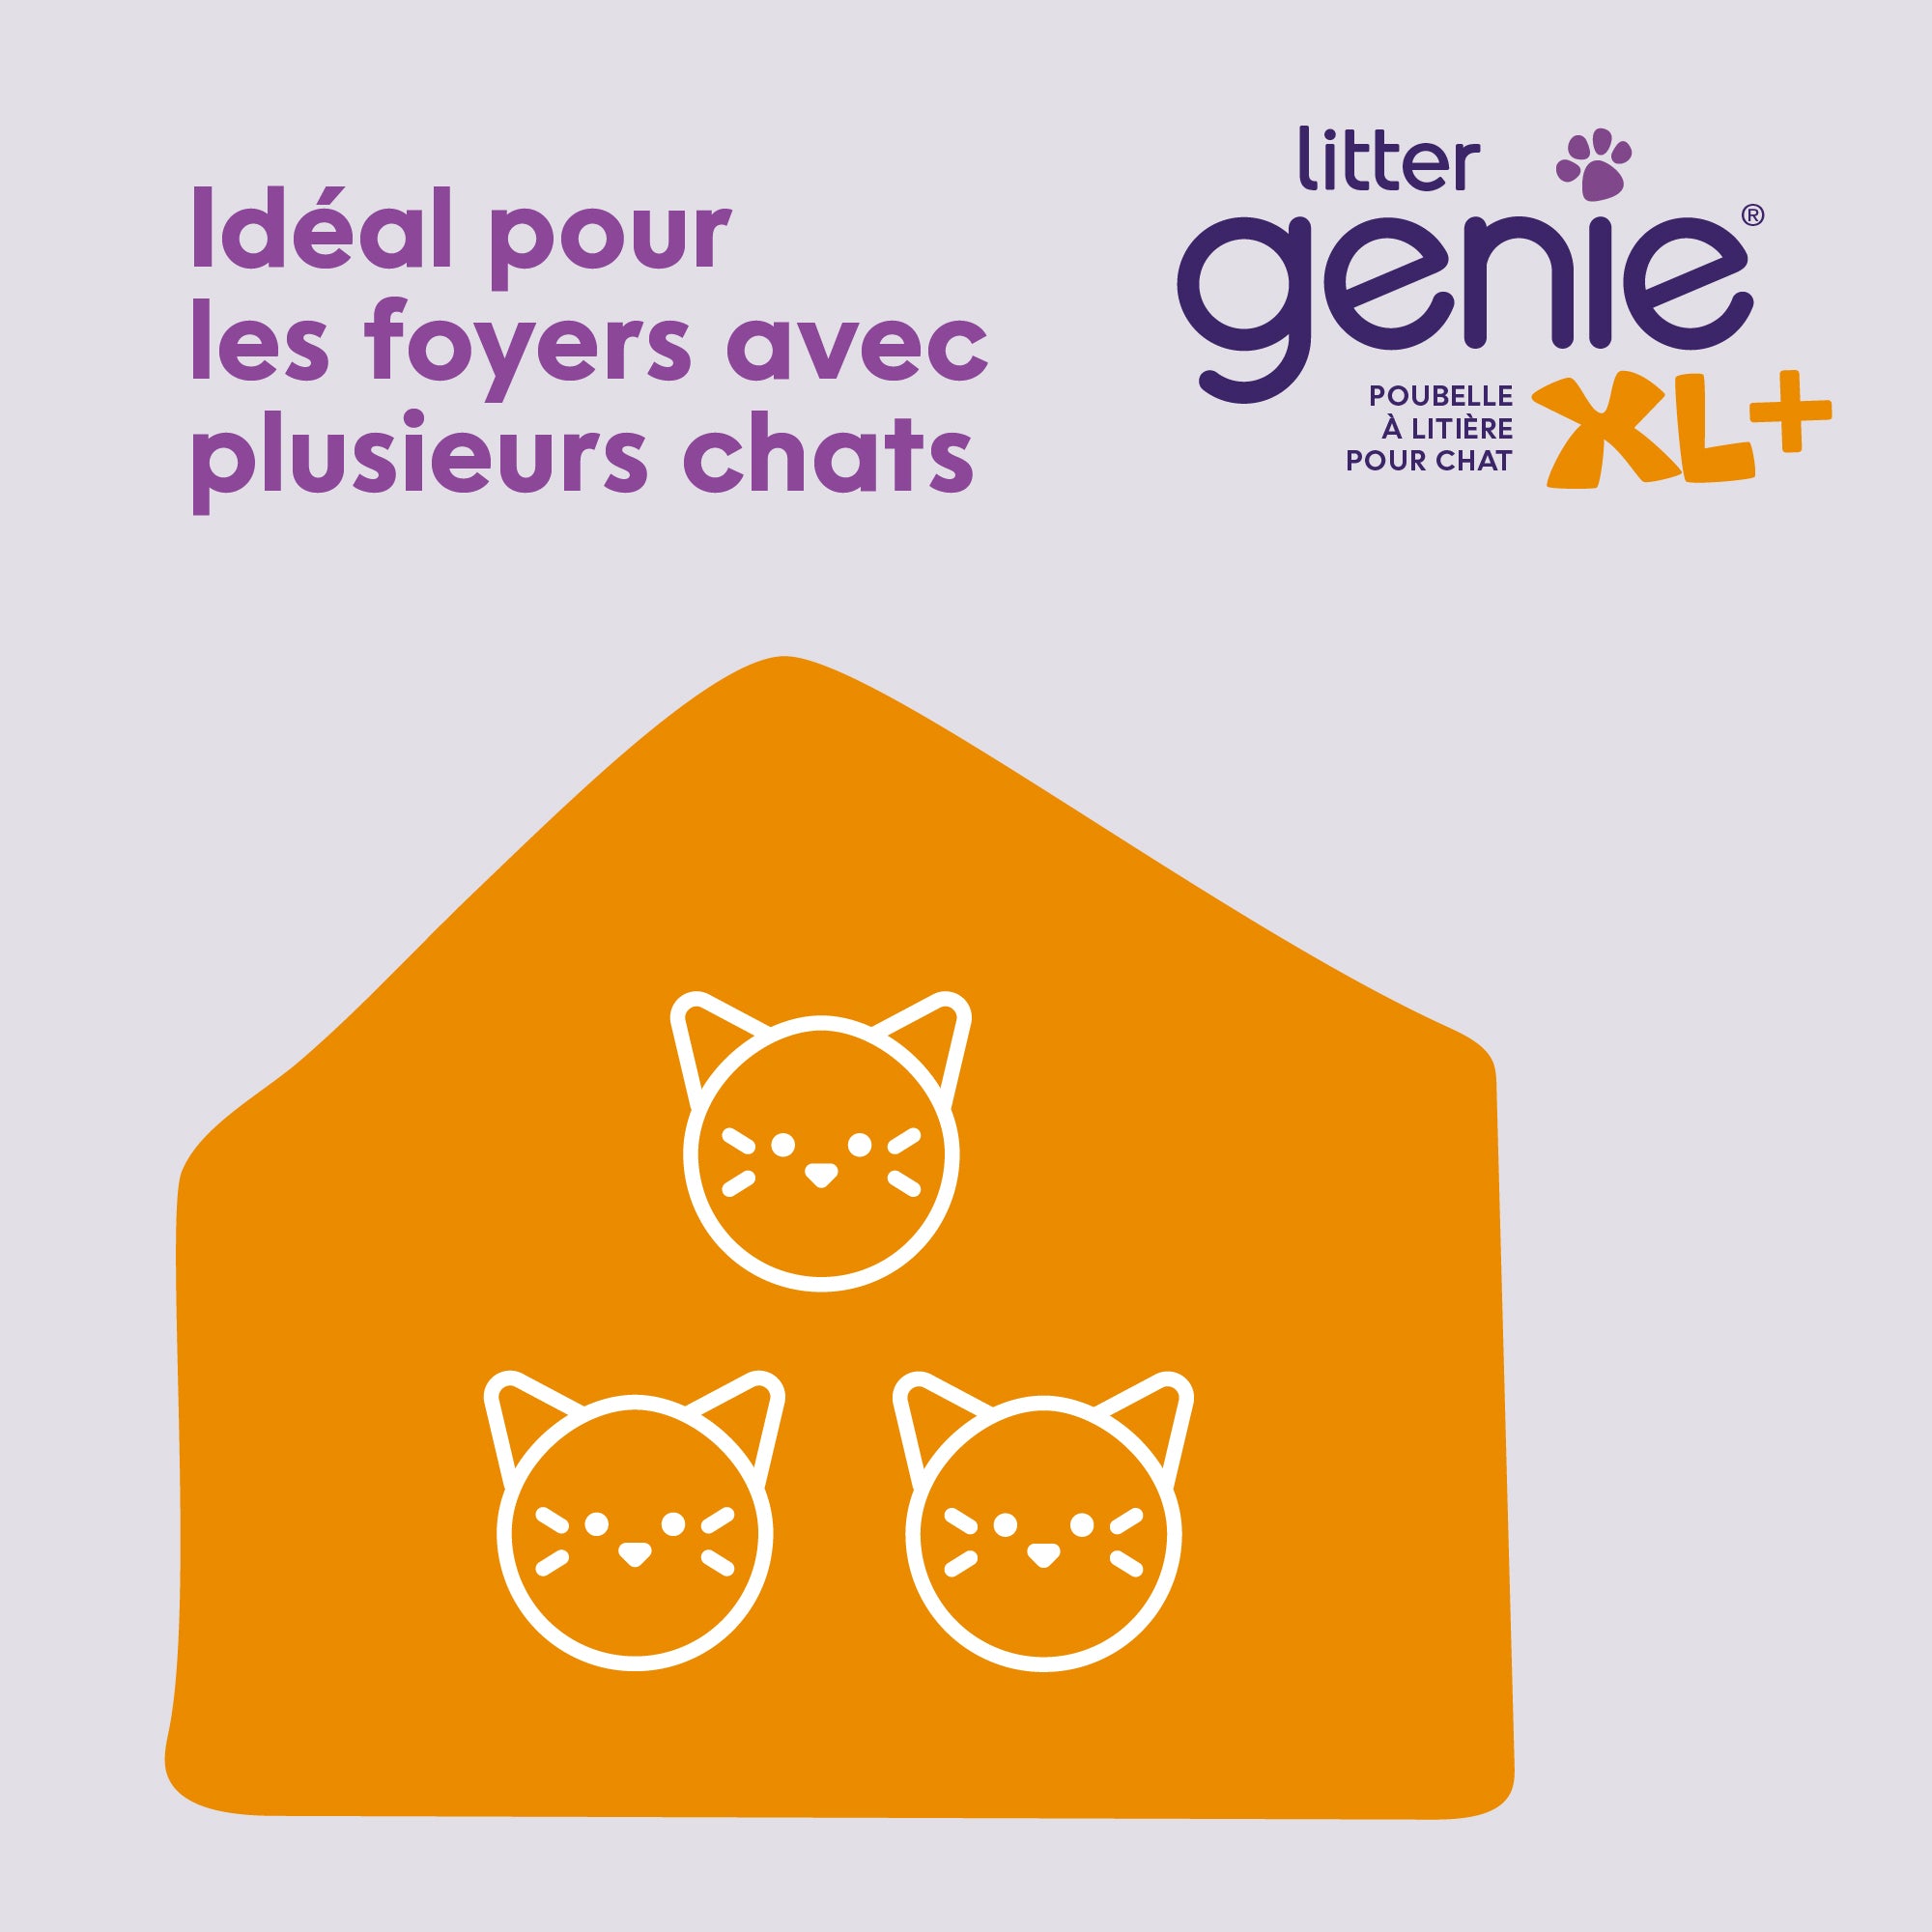 LitterLocker Poubelle pour litière de chats by Litter Genie